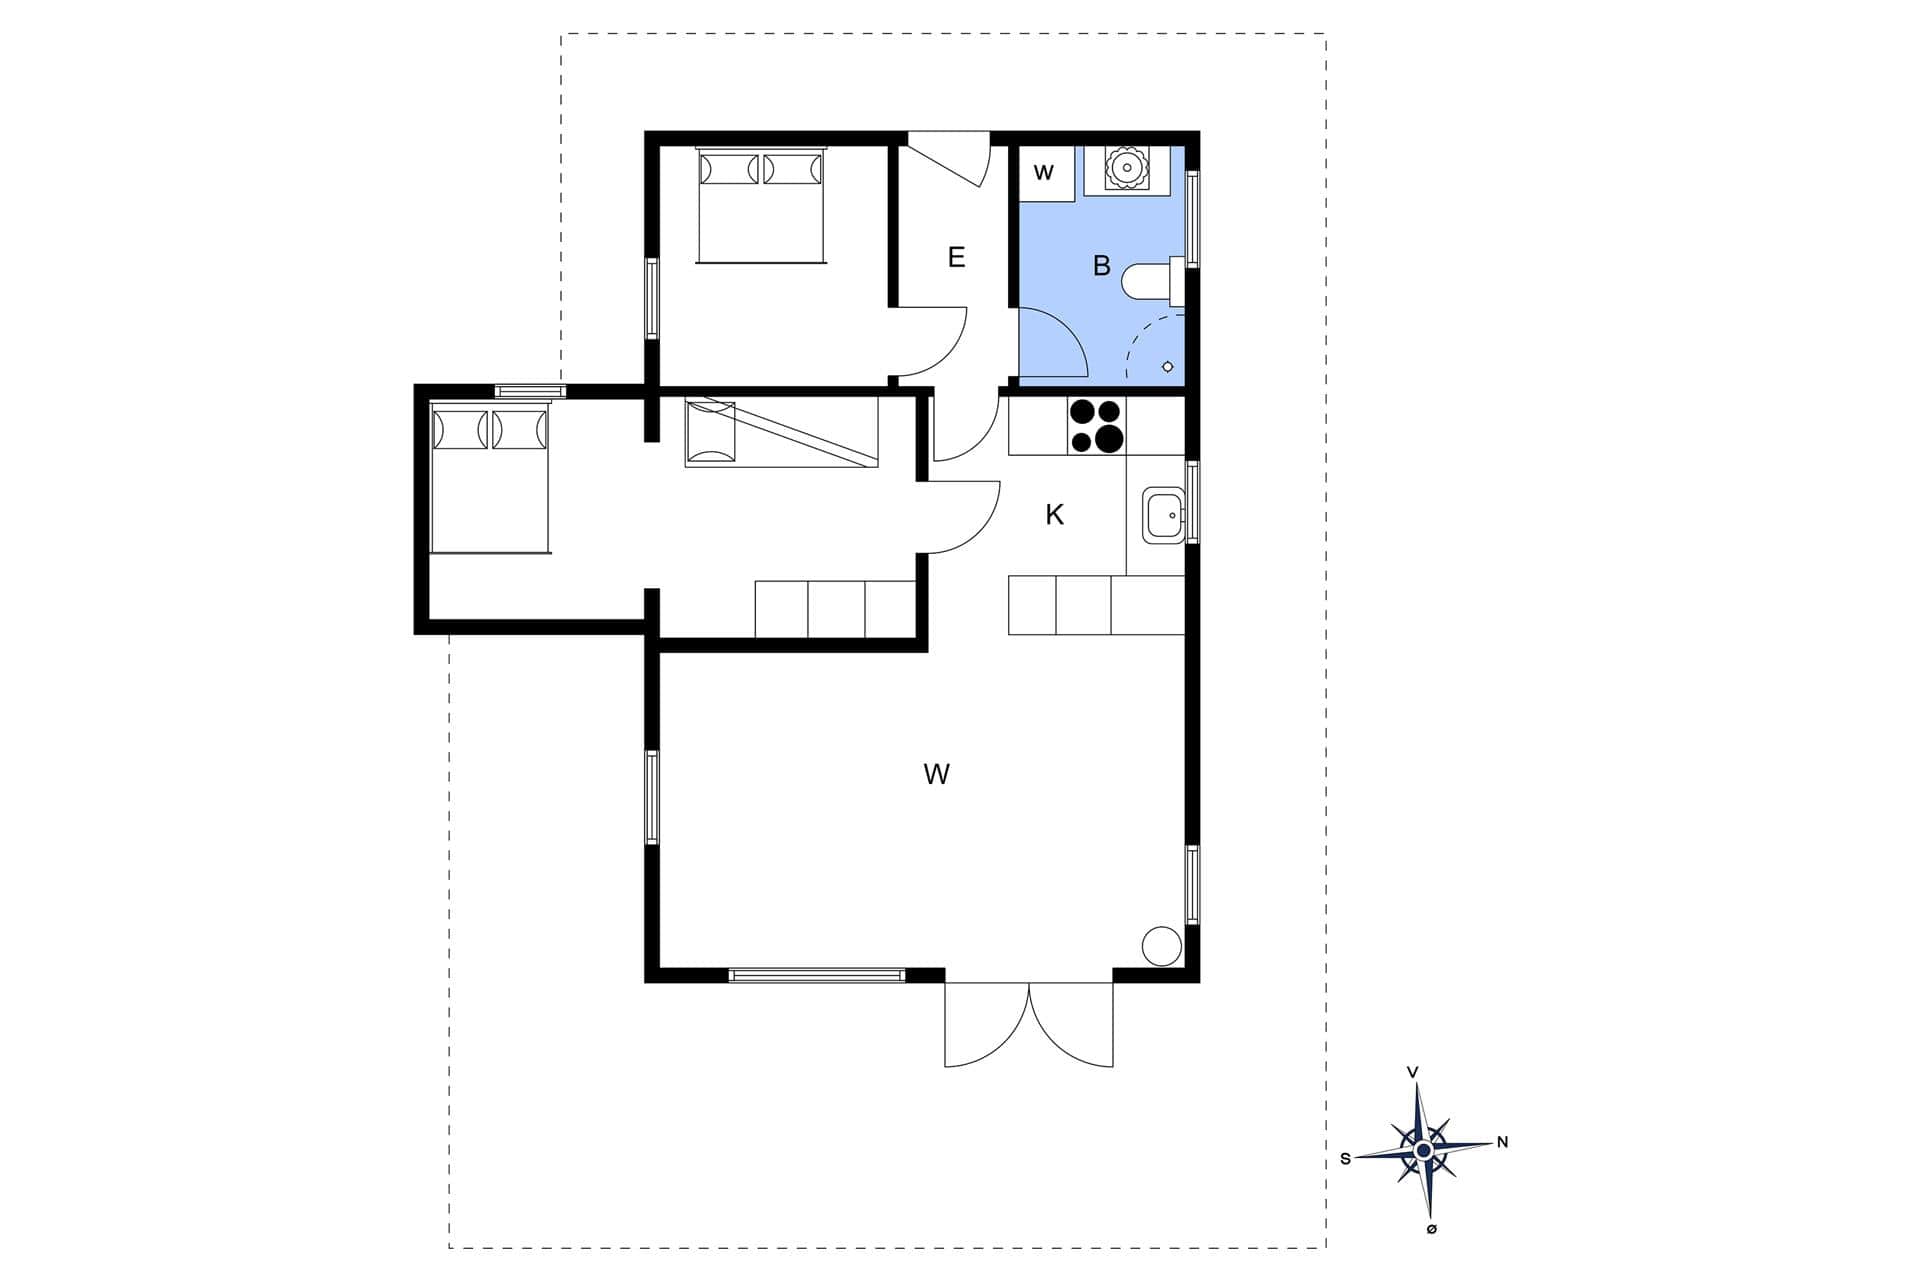 Interior 14-3 Holiday-home M66553, Snerlevej 2, DK - 5300 Kerteminde